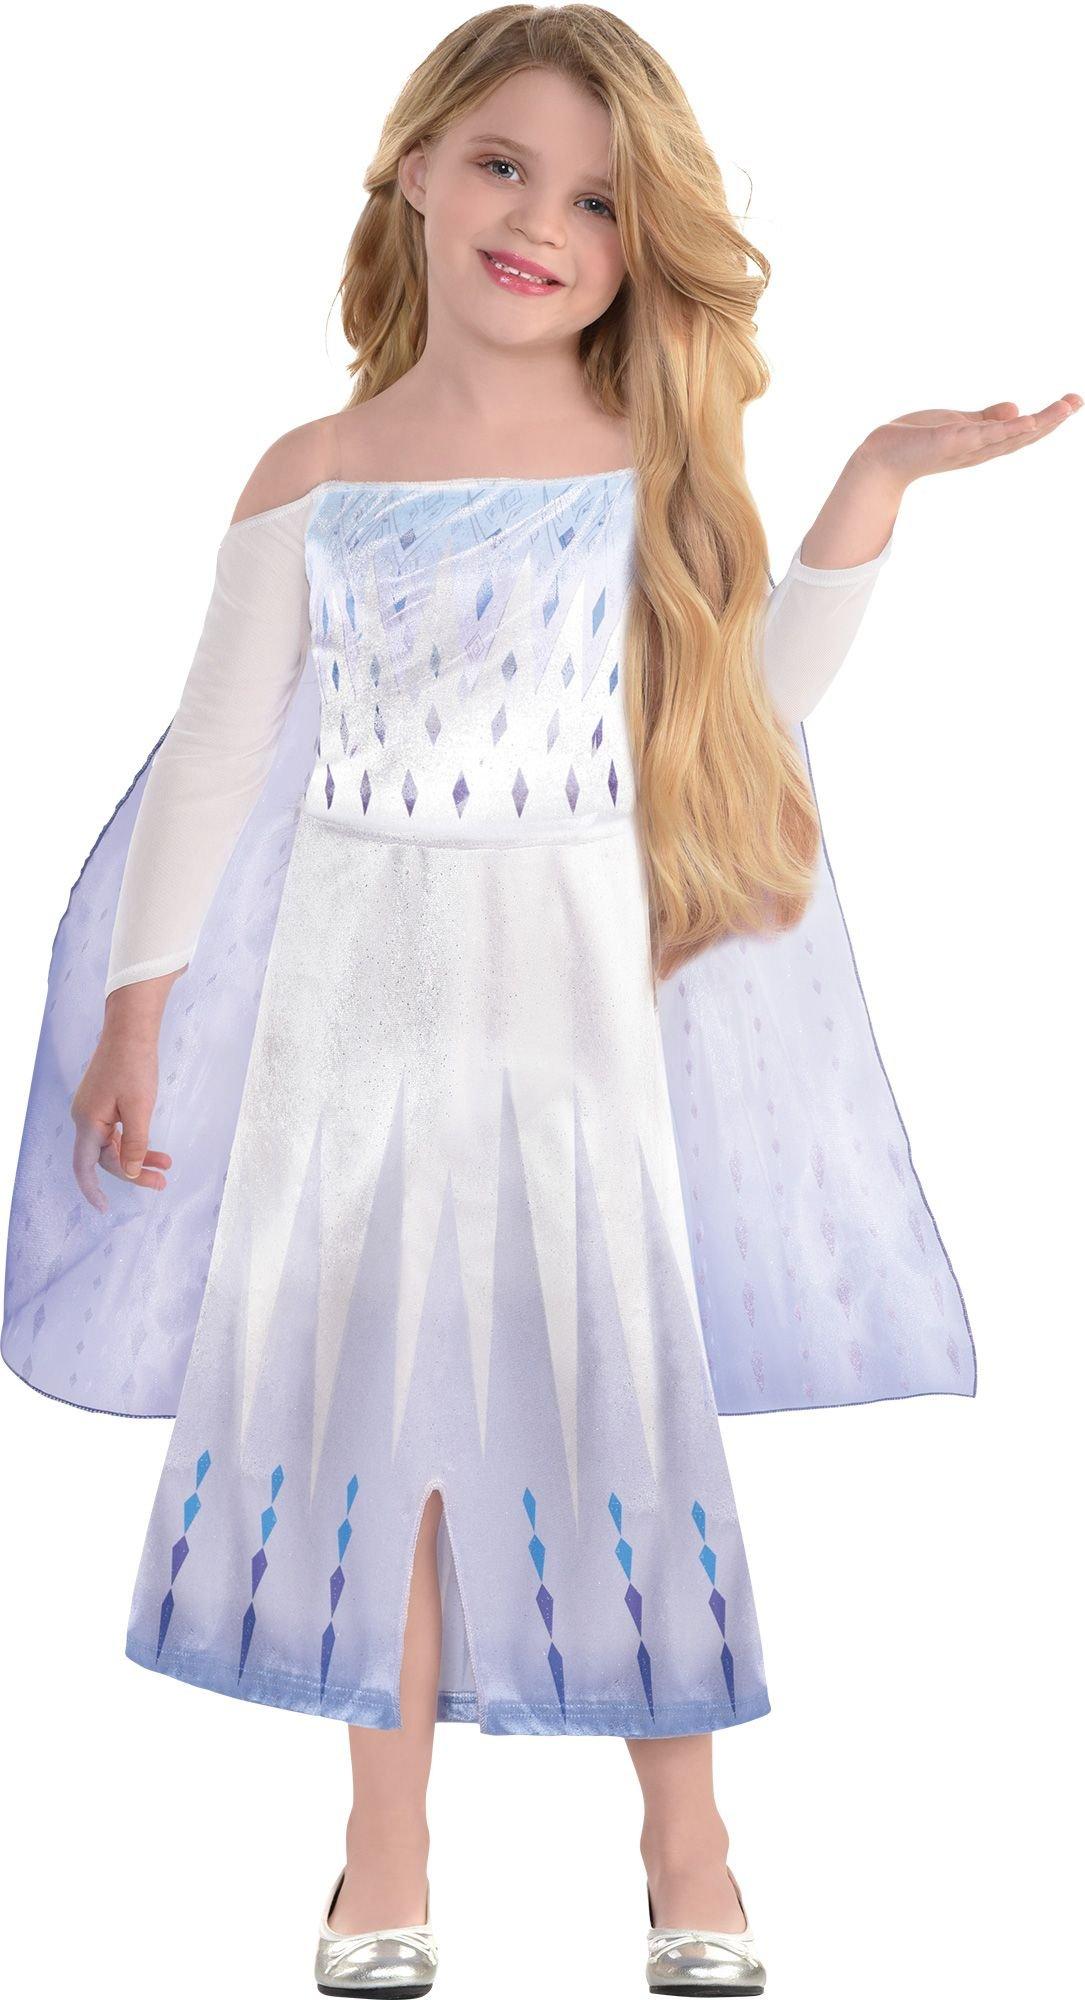 Kids' Epilogue Elsa Costume - Frozen 2 | Party City